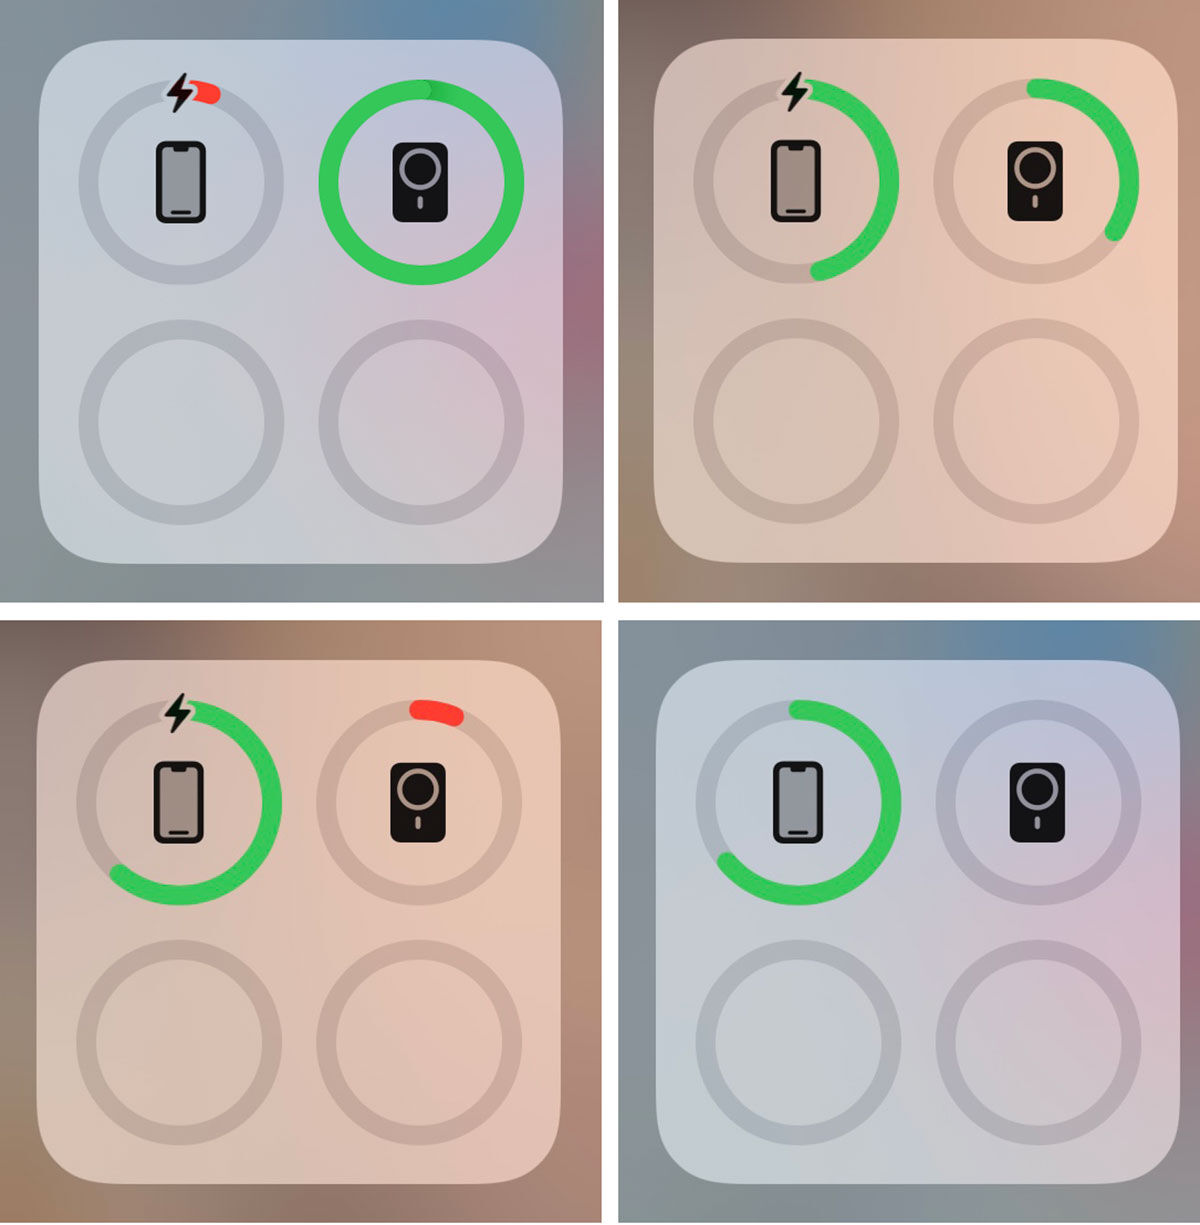 Apple Iconos de carga del paquete de batería MagSafe